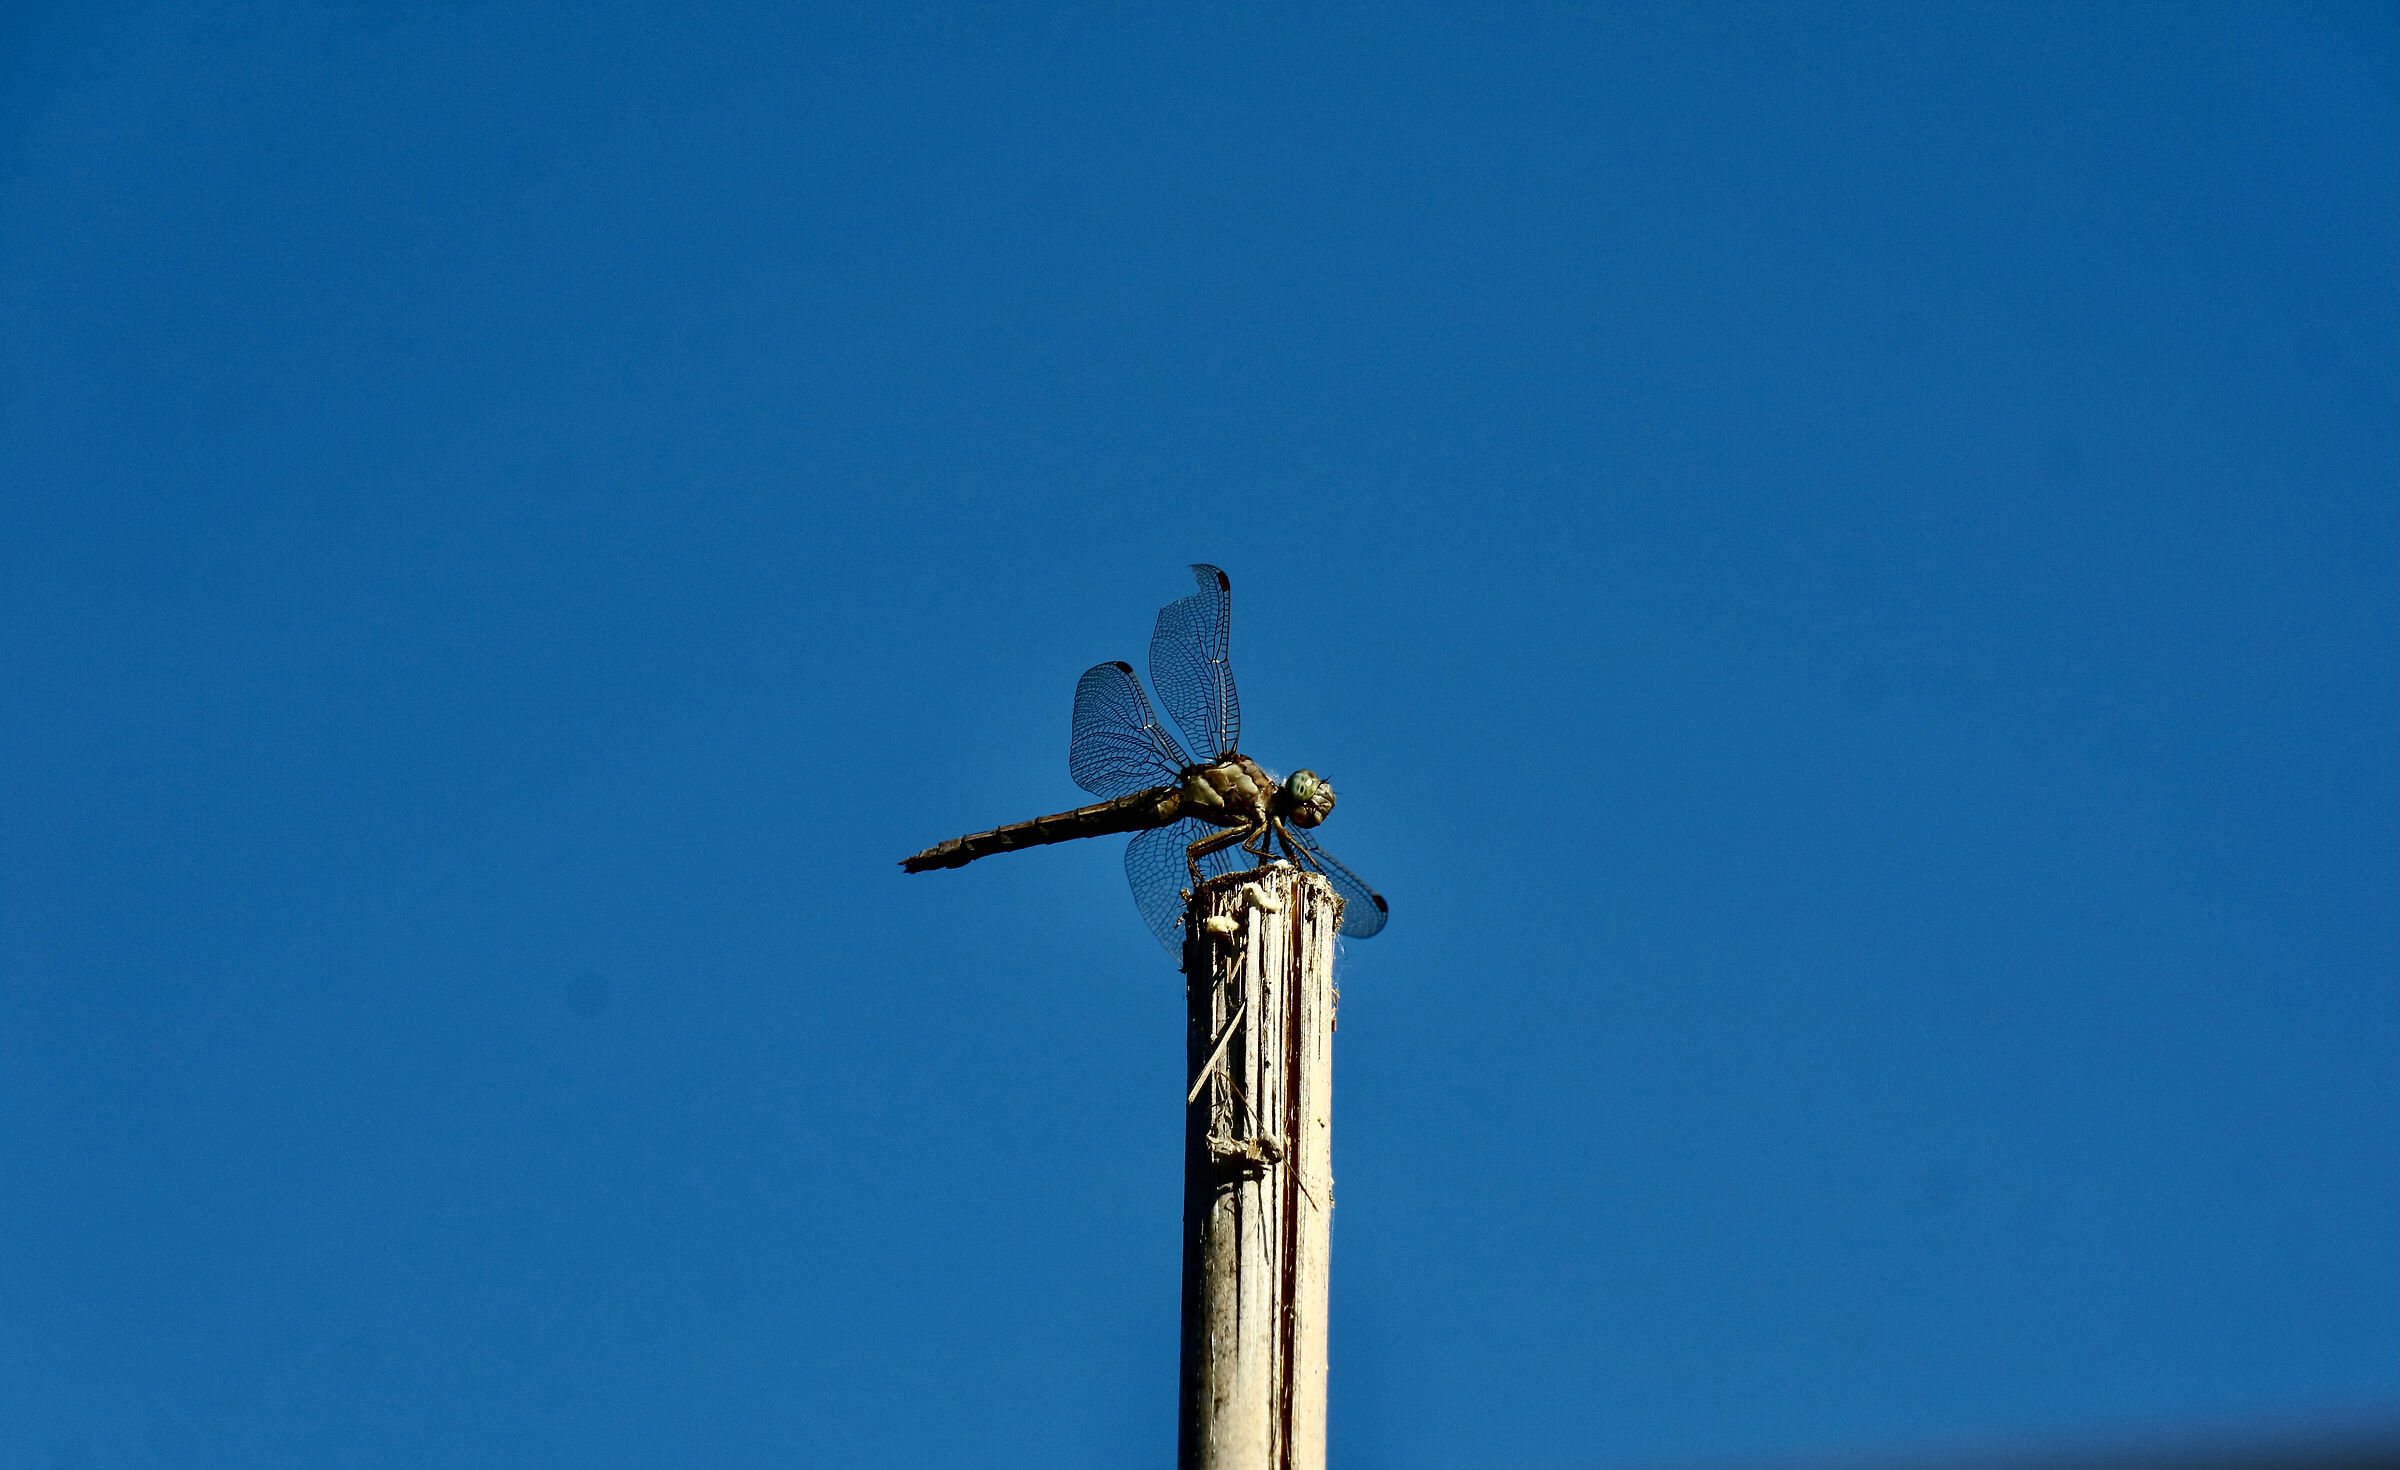 A dragonfly settled on a pole. ...